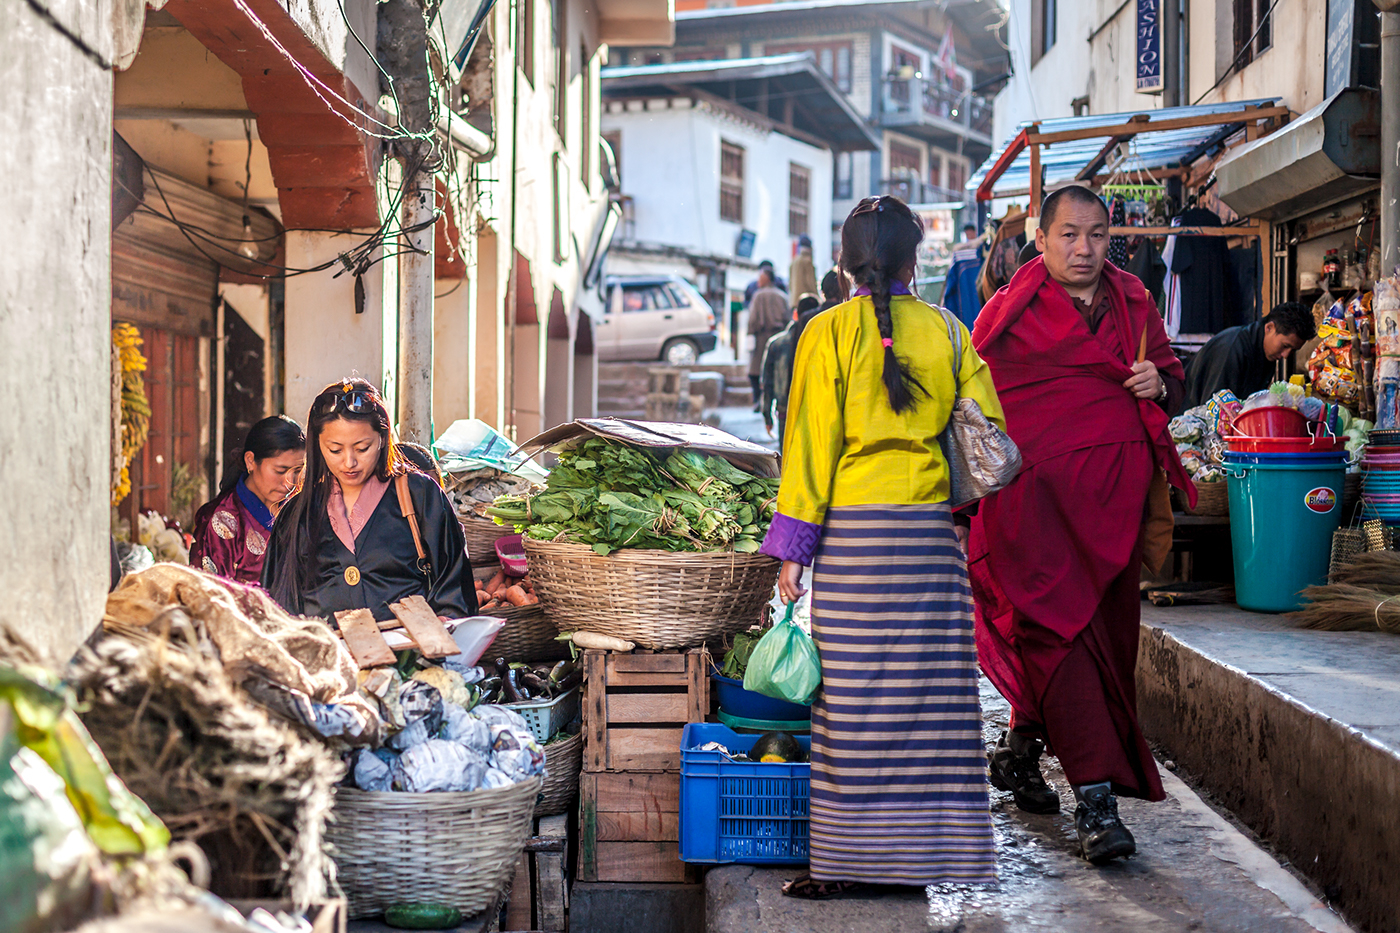 bhutan thunderdragon asia himalaya happiness people street photgraphy